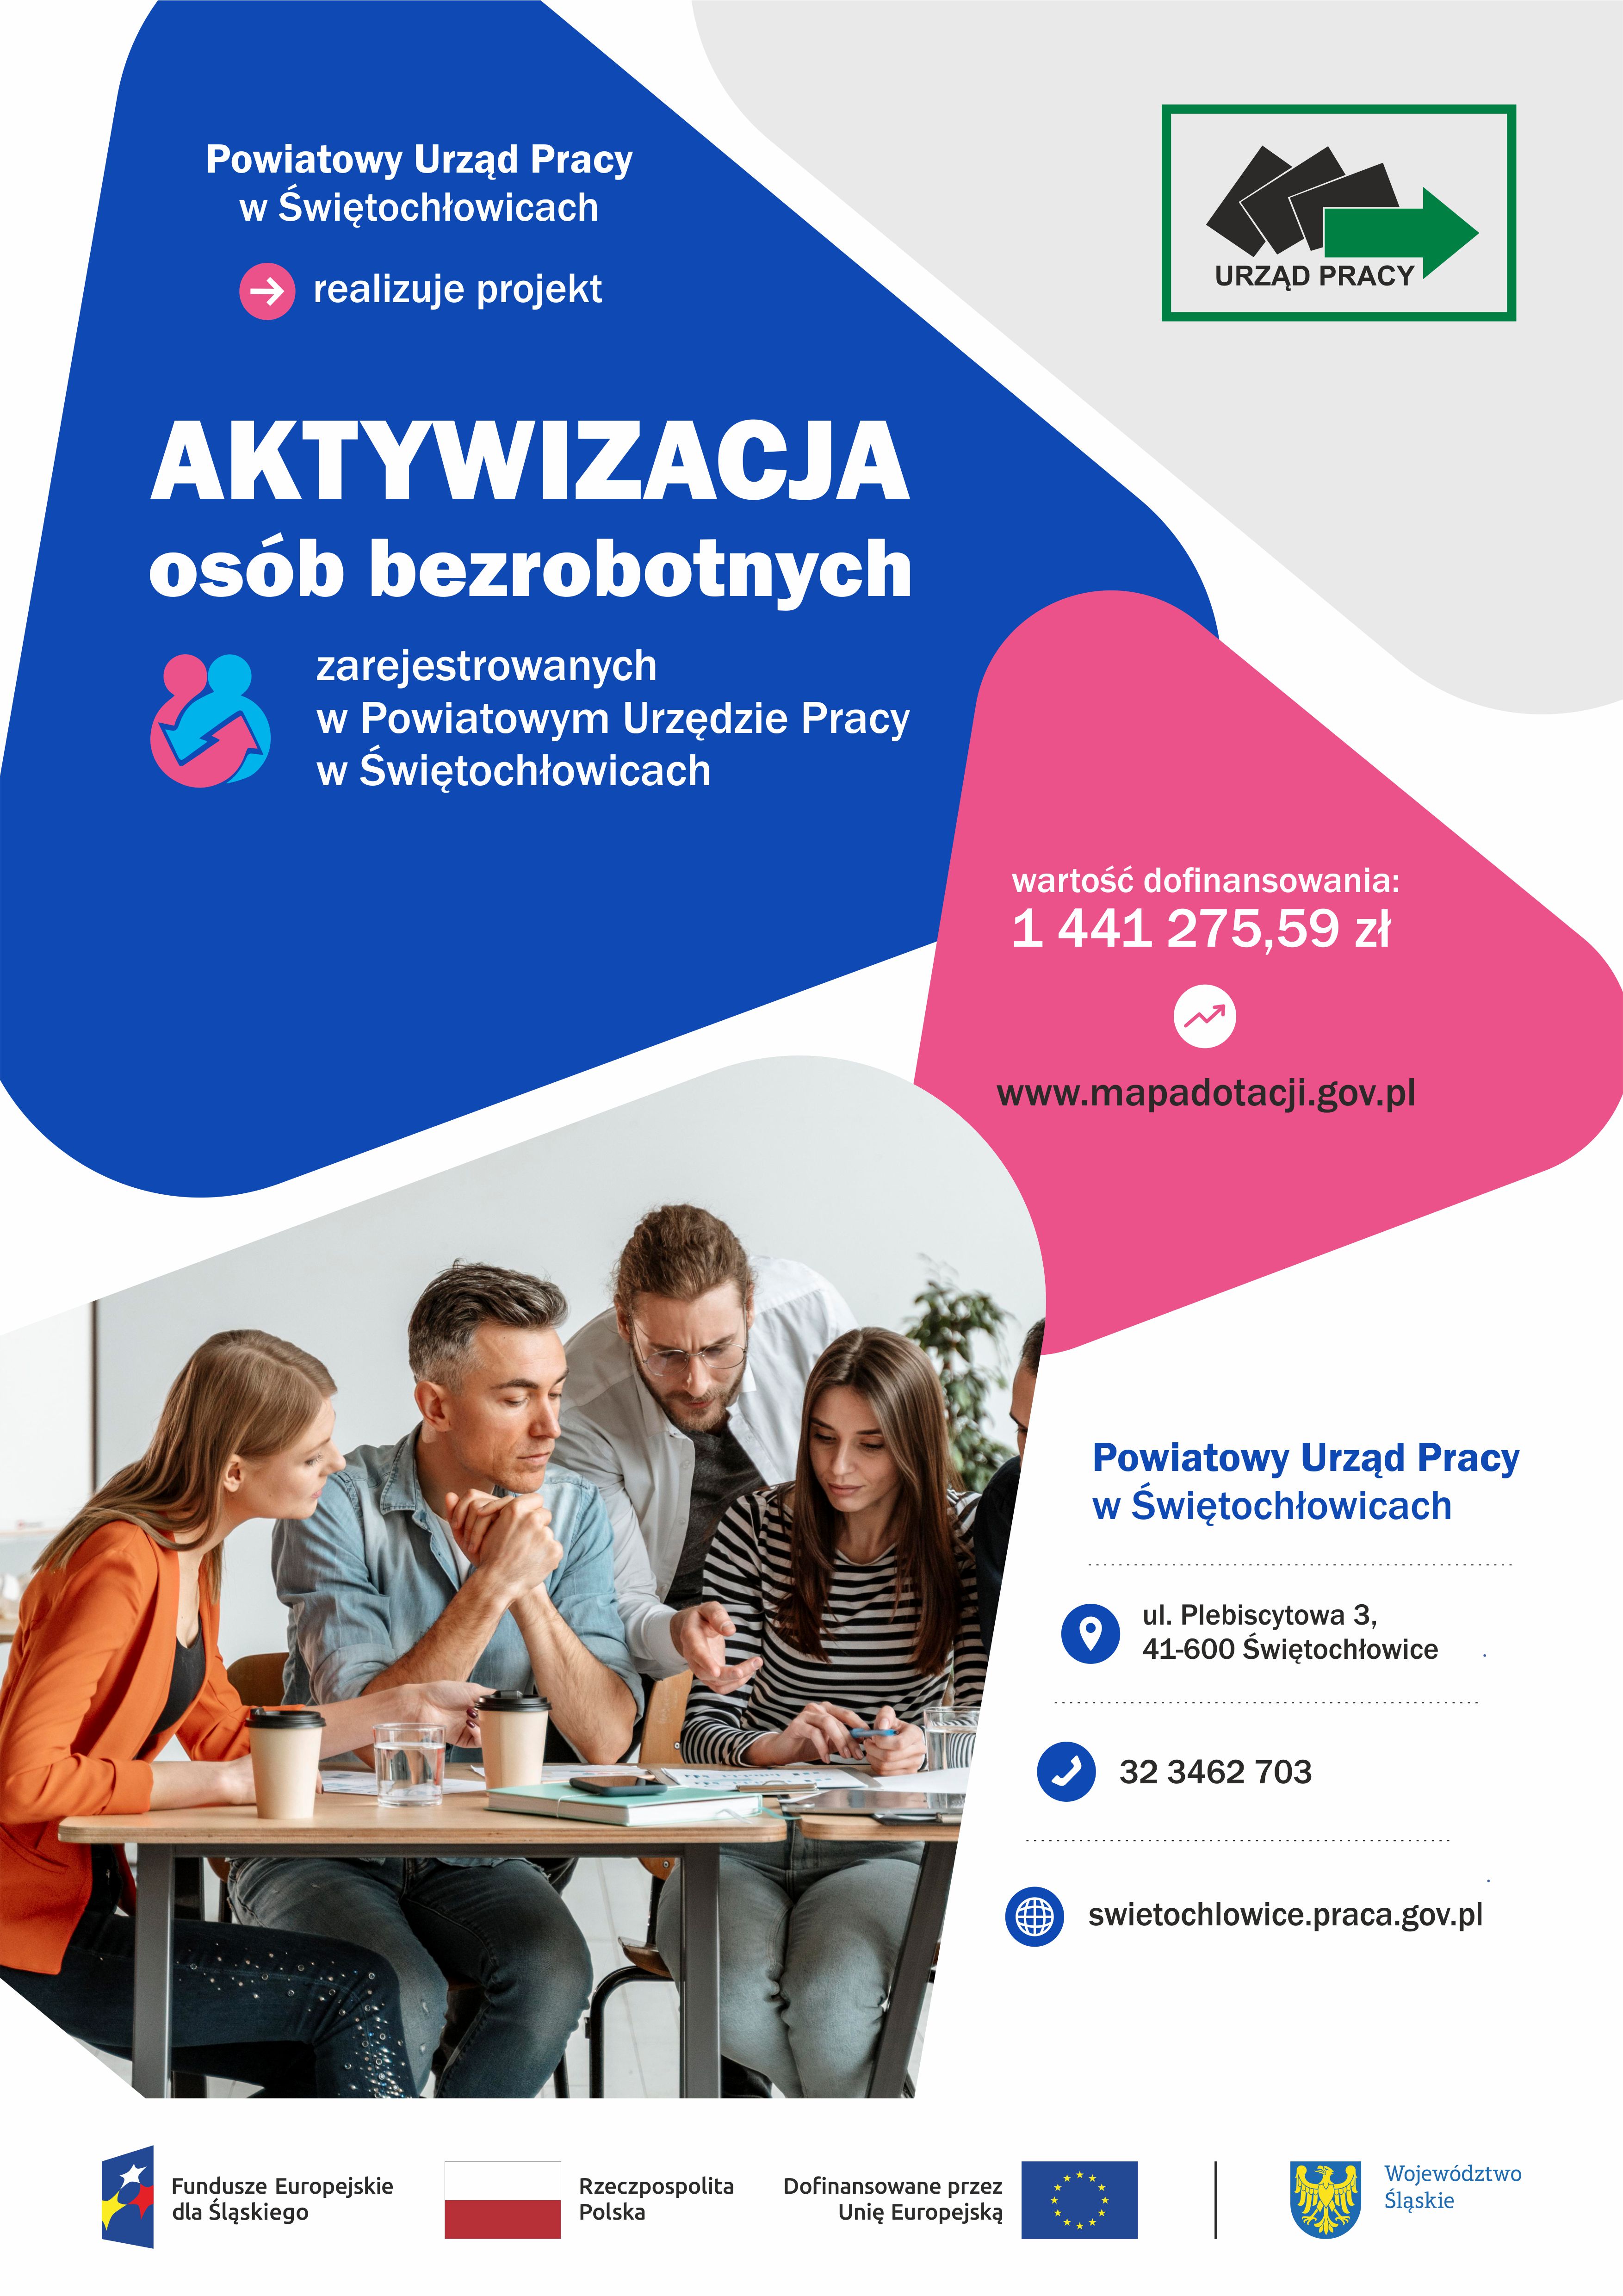 slider.alt.head „Aktywizacja osób bezrobotnych zarejestrowanych w Powiatowym Urzędzie Pracy w Świętochłowicach”